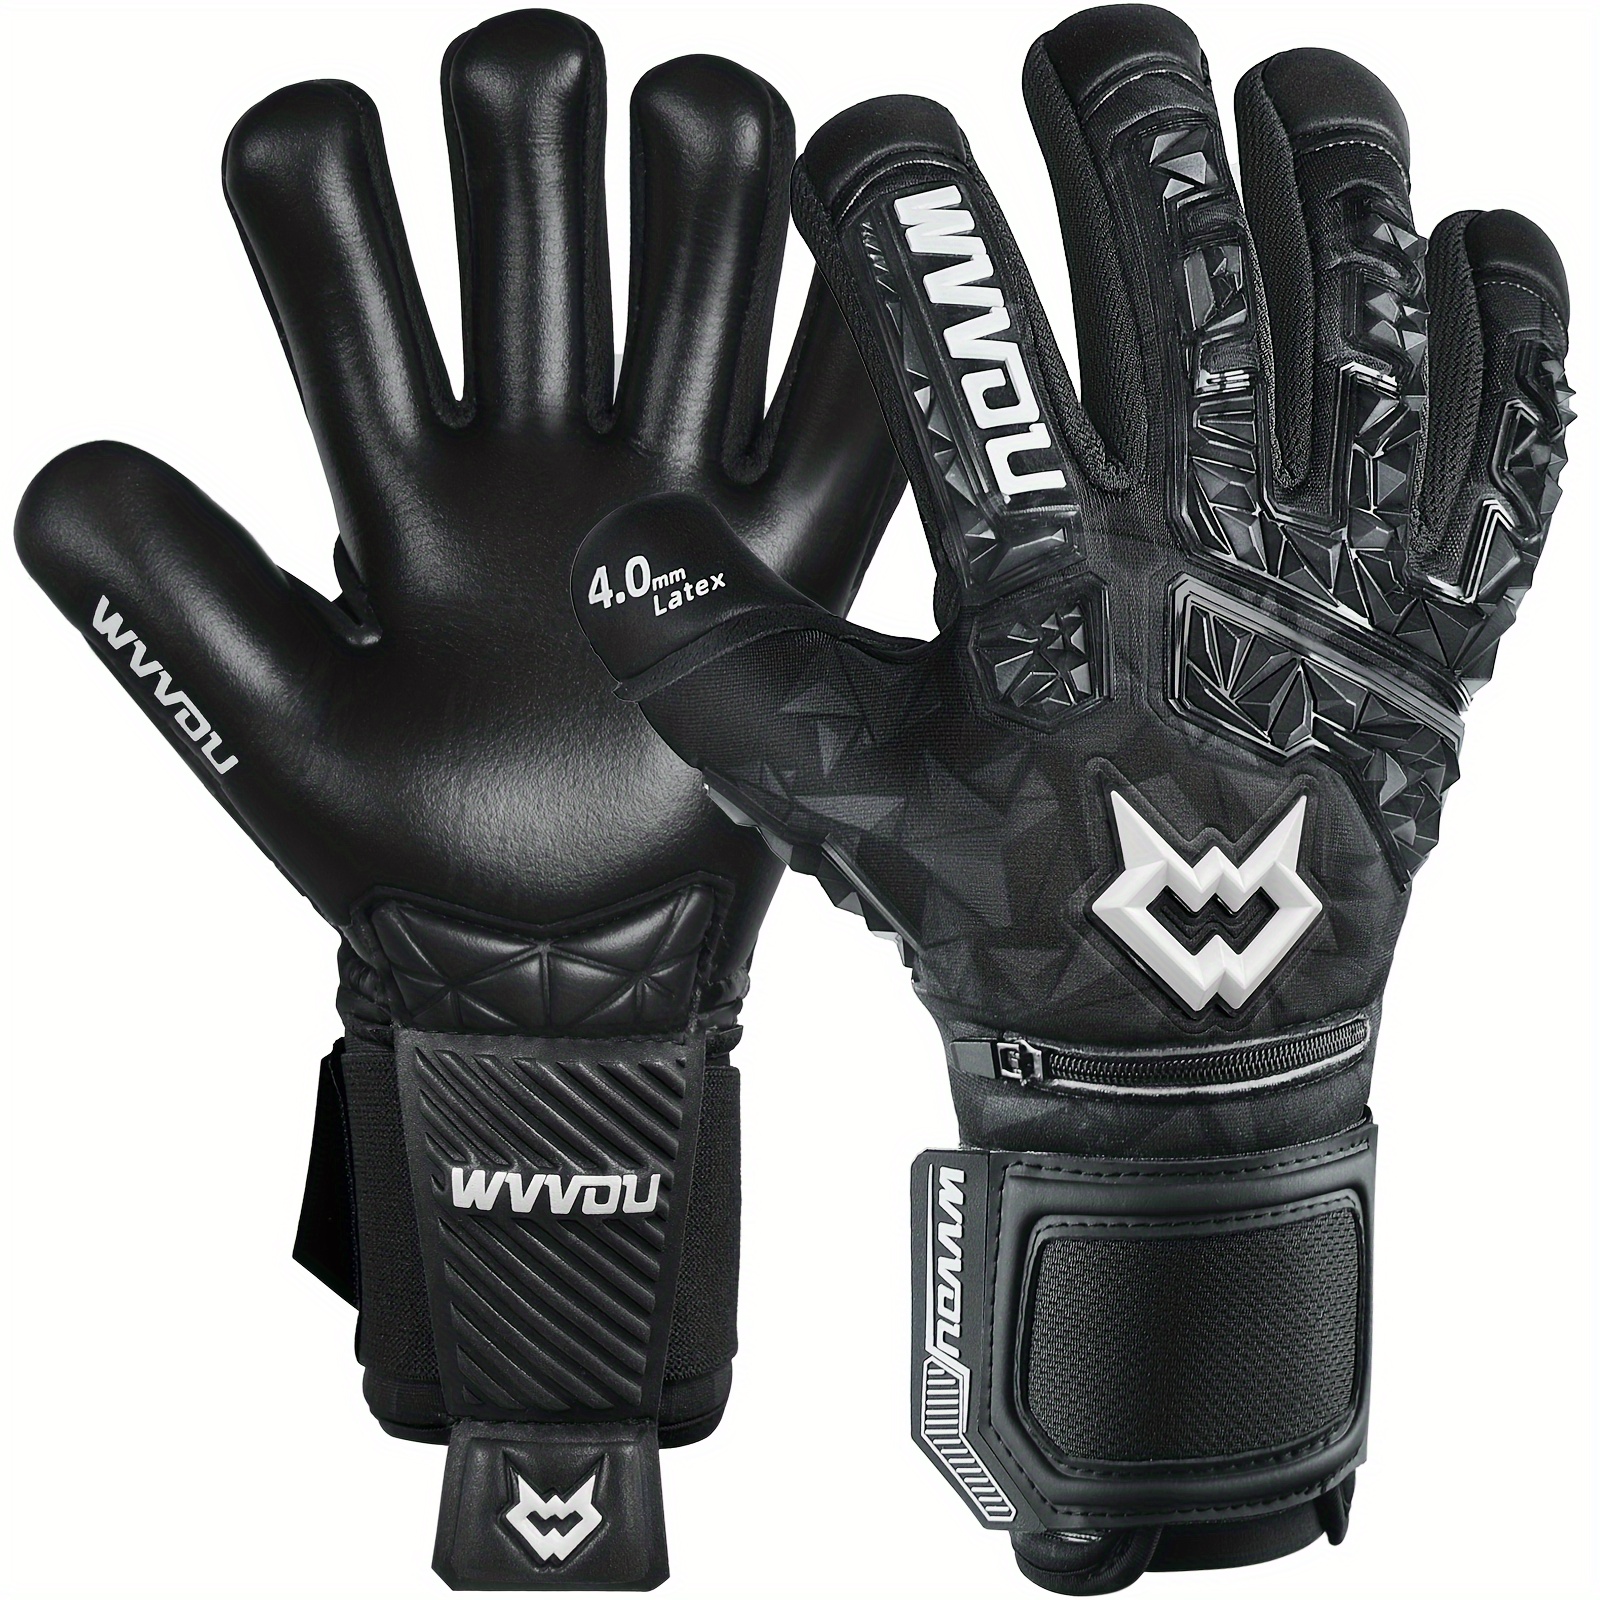 Padded Football Gloves Sticky Padded Goalkeeper Gloves - Temu